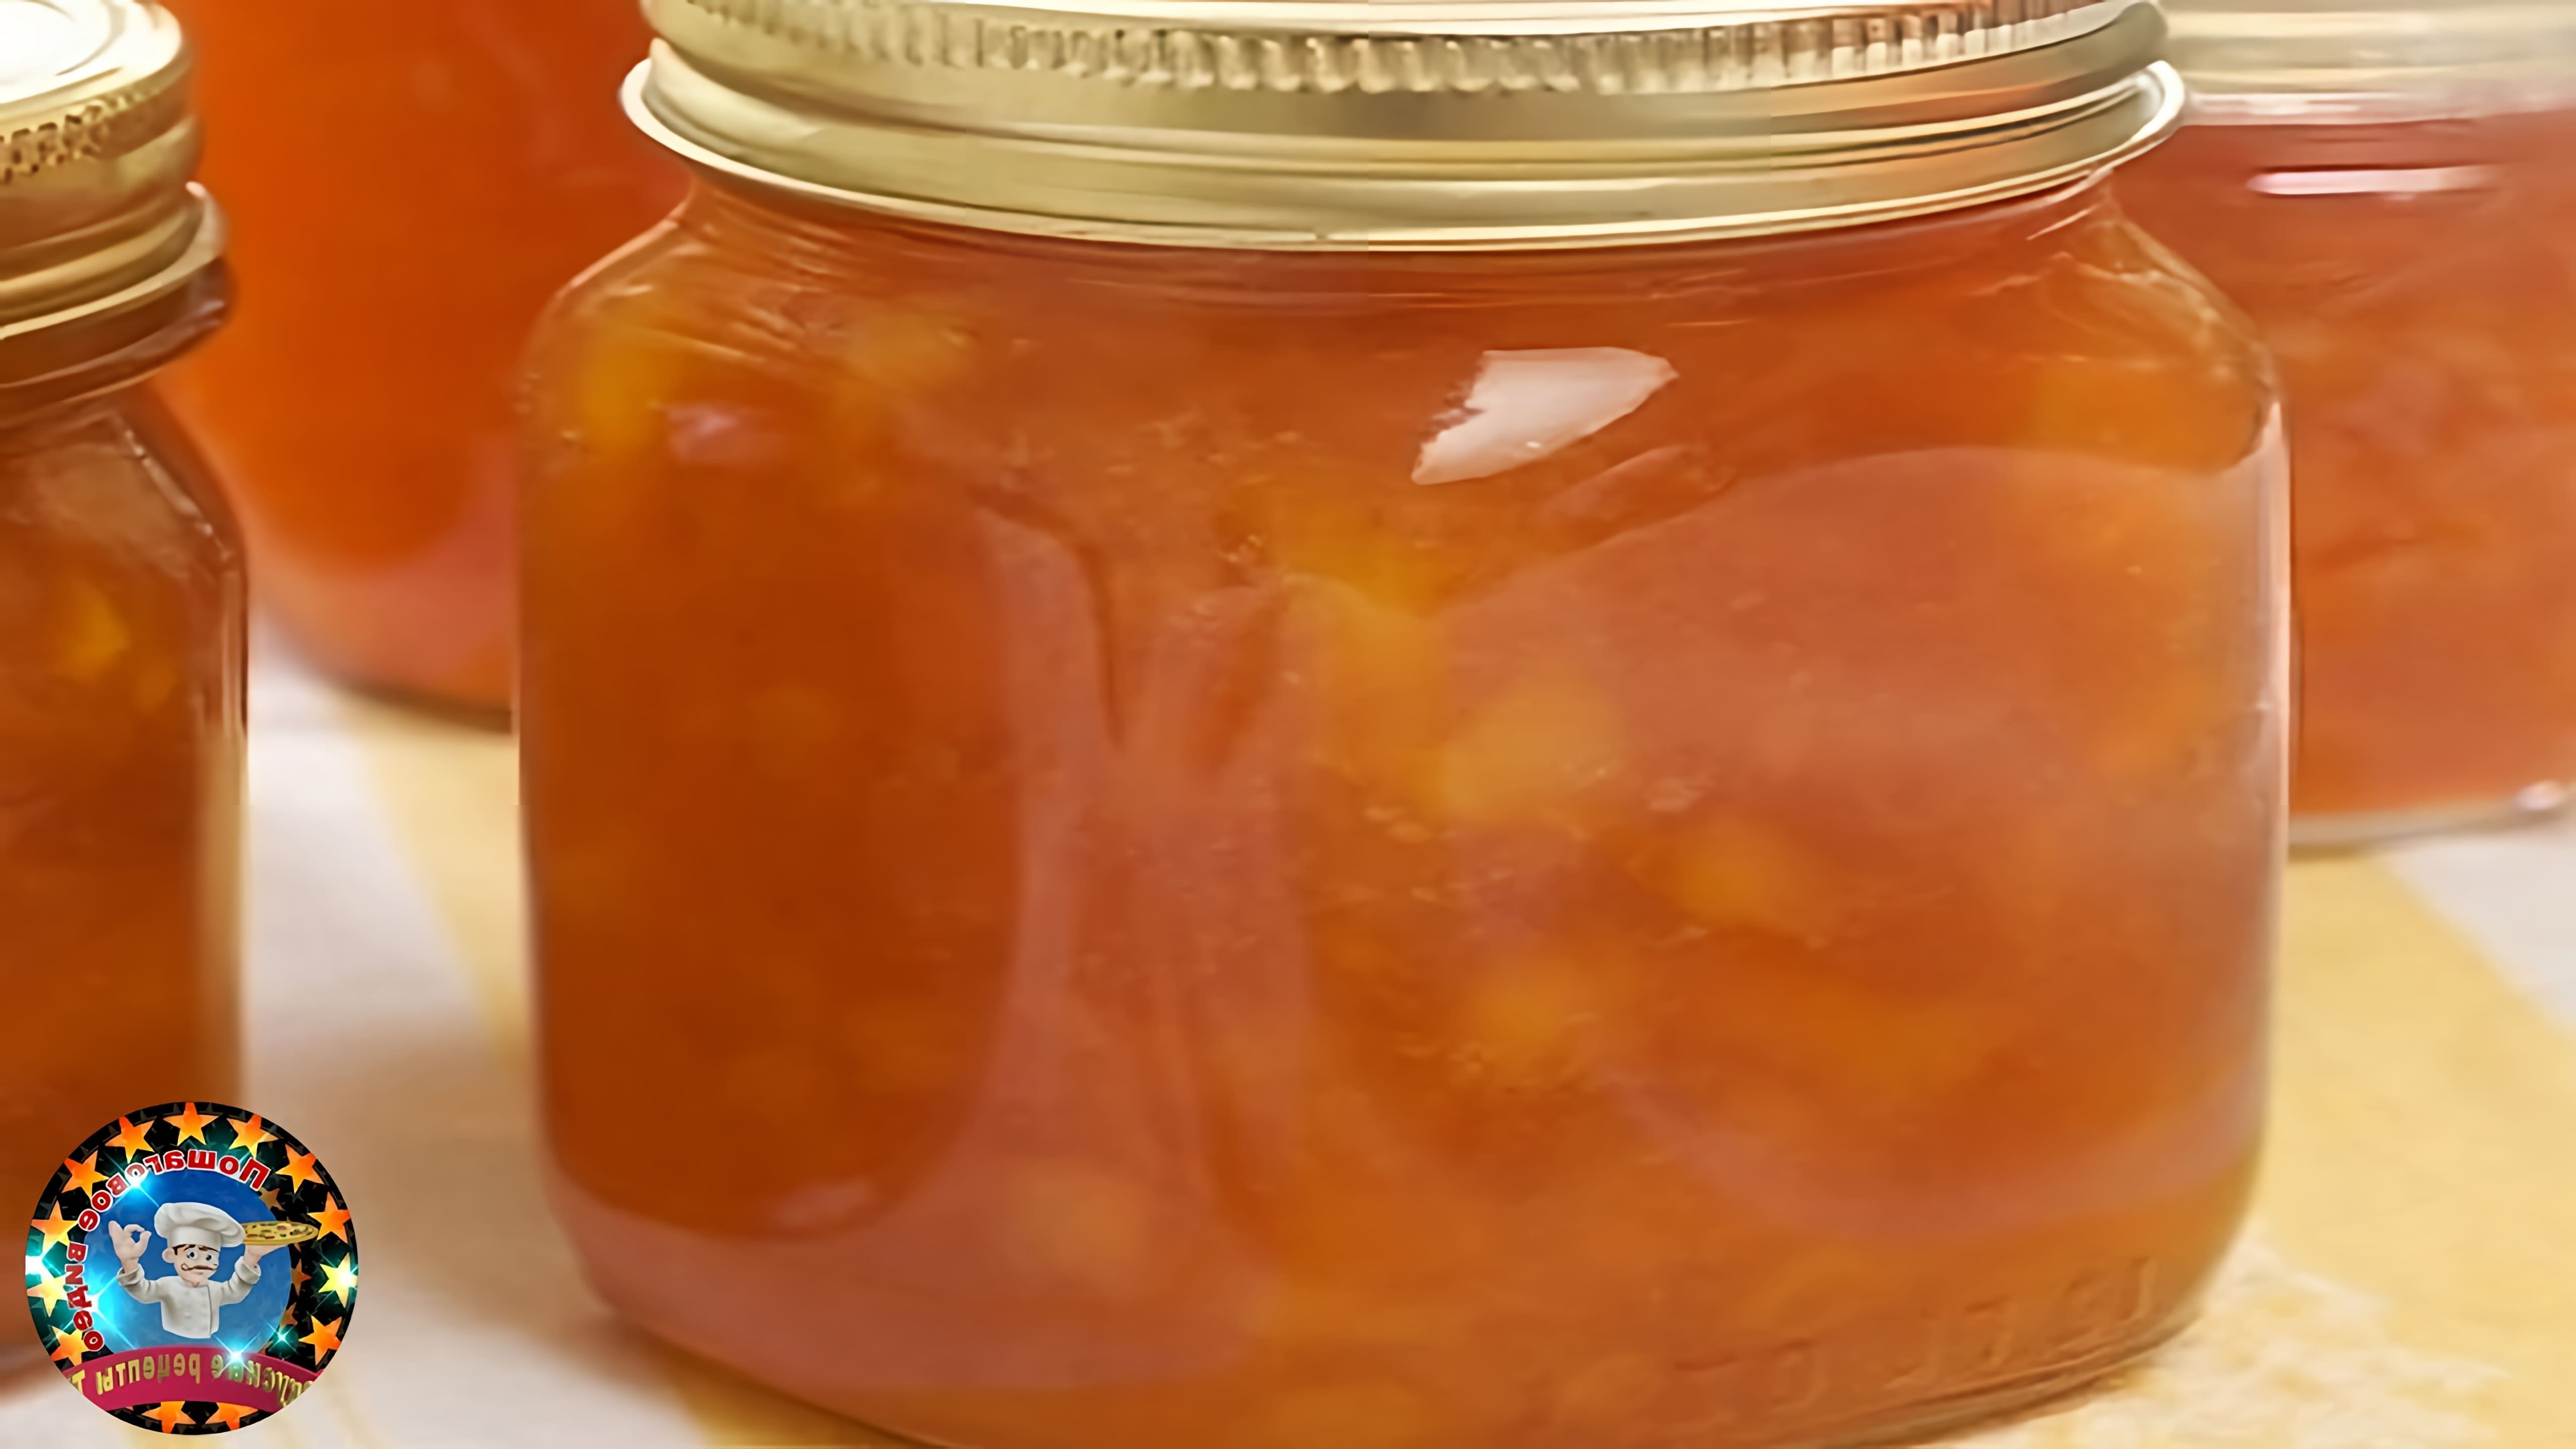 "Повидло Персиковое" - это видео-ролик, который демонстрирует процесс приготовления персикового повидла